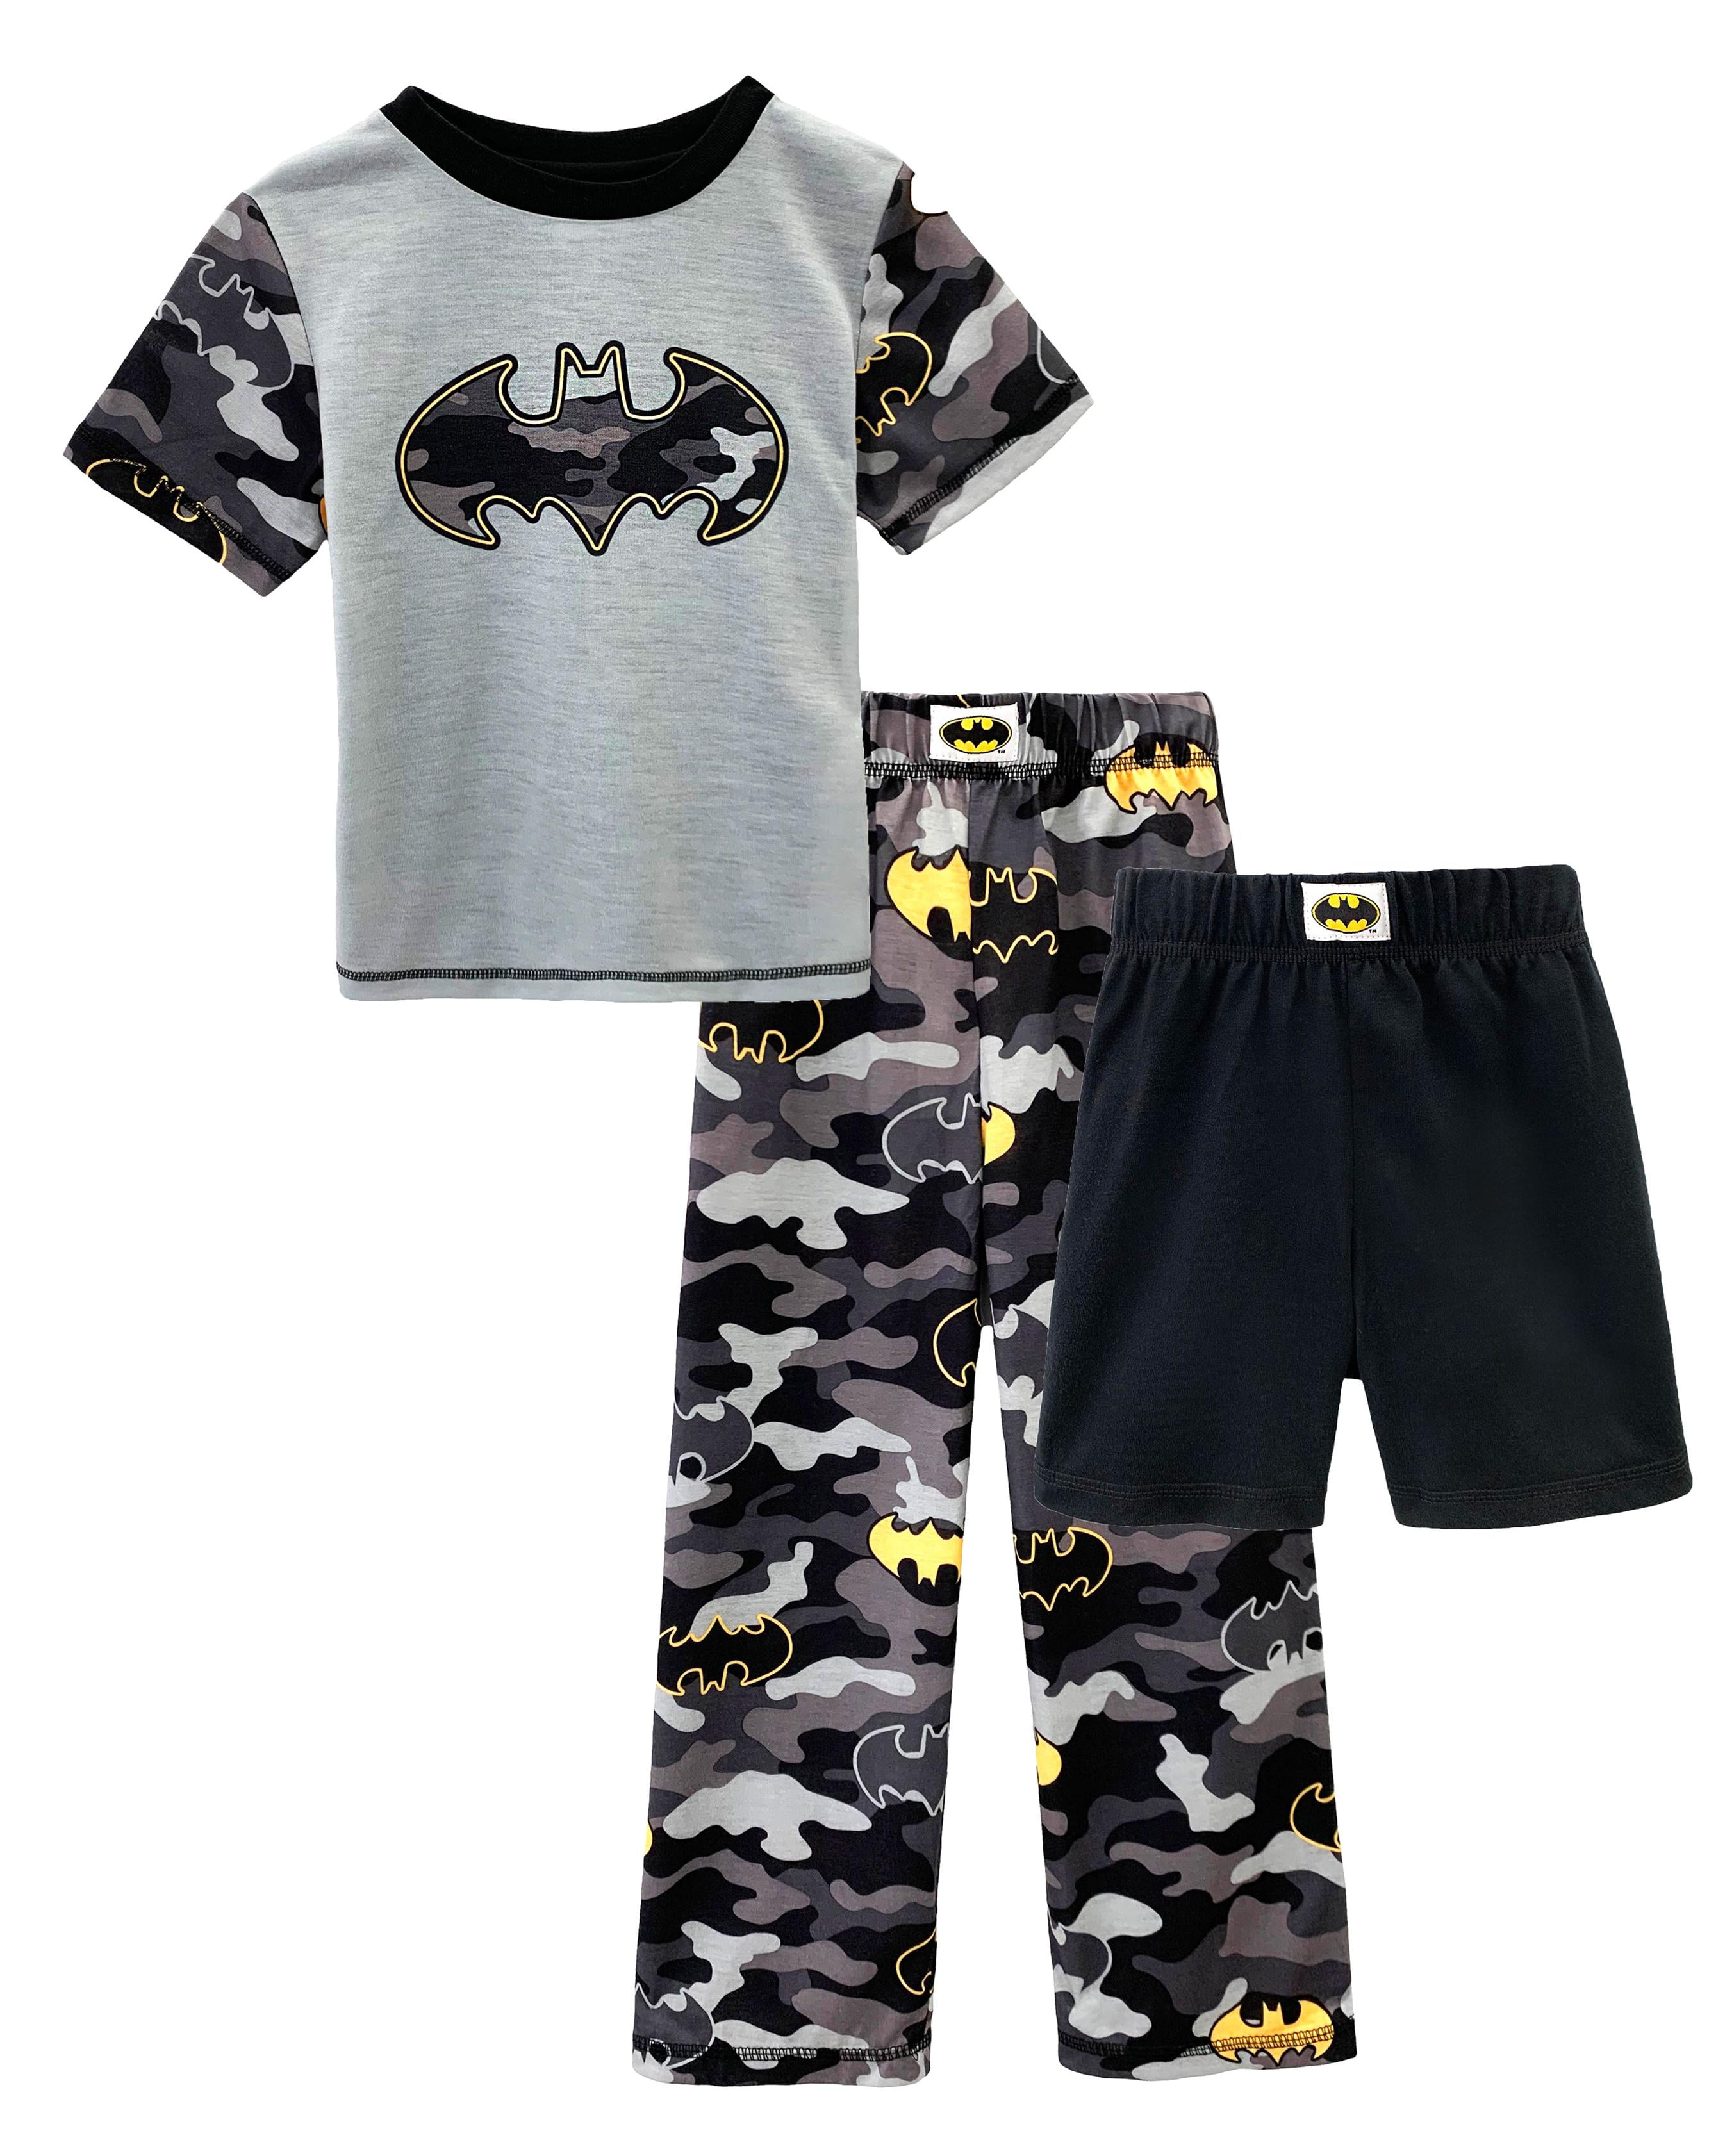 Boys Batman 100% Cotton Short Sleeved Shirt and Shorts Shorties Pajamas Set